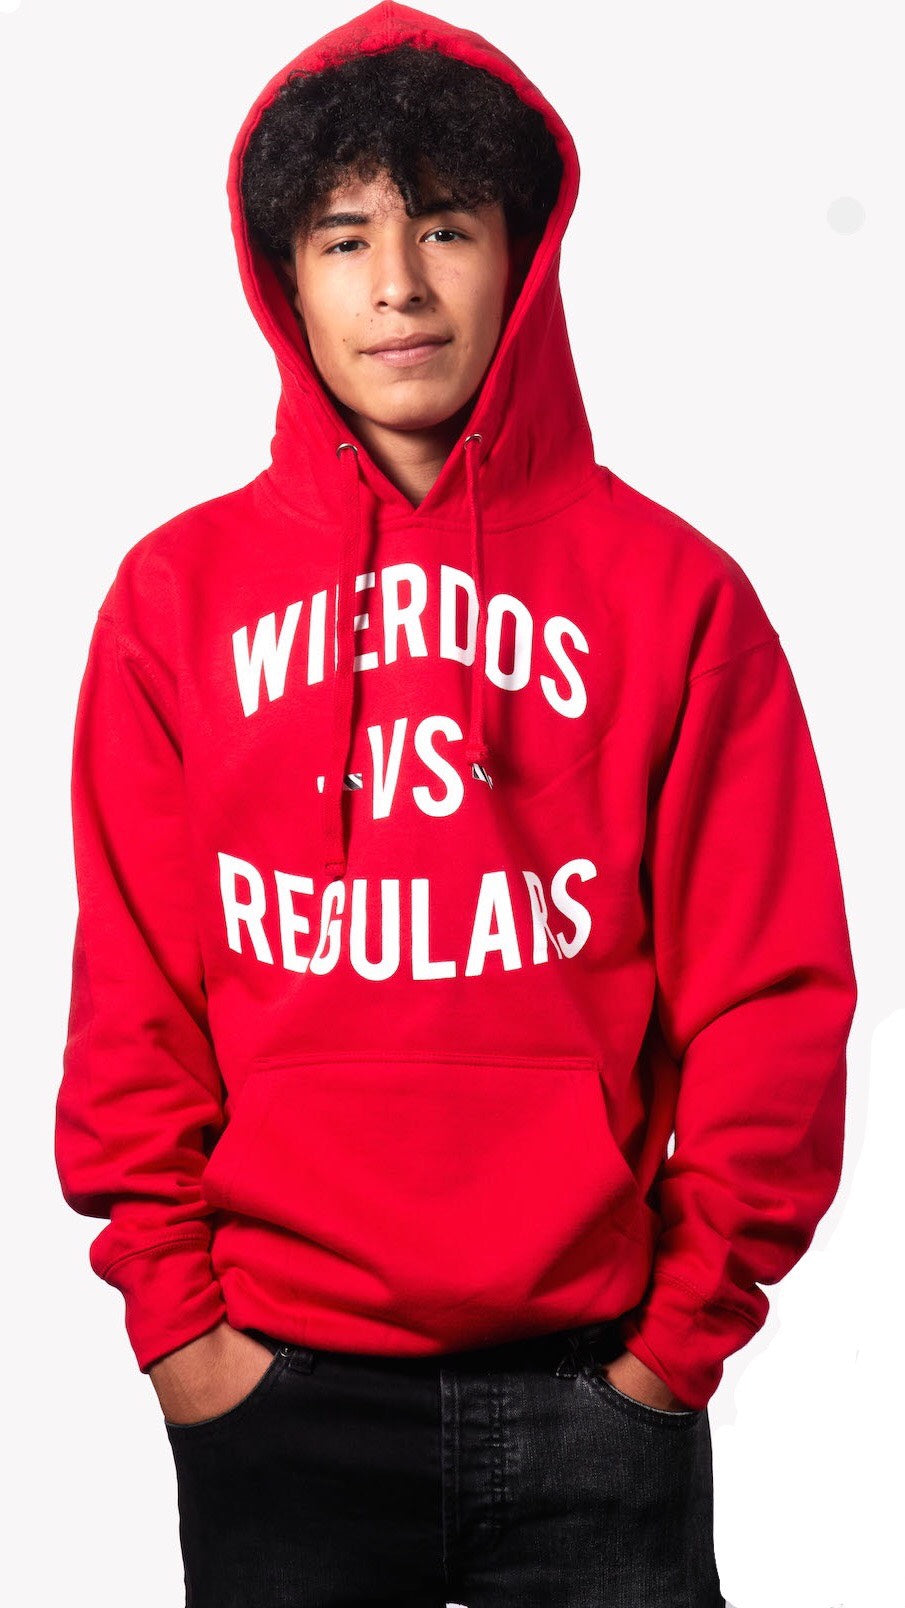 The Wierdos Vs The Regulars Hoody (Red)